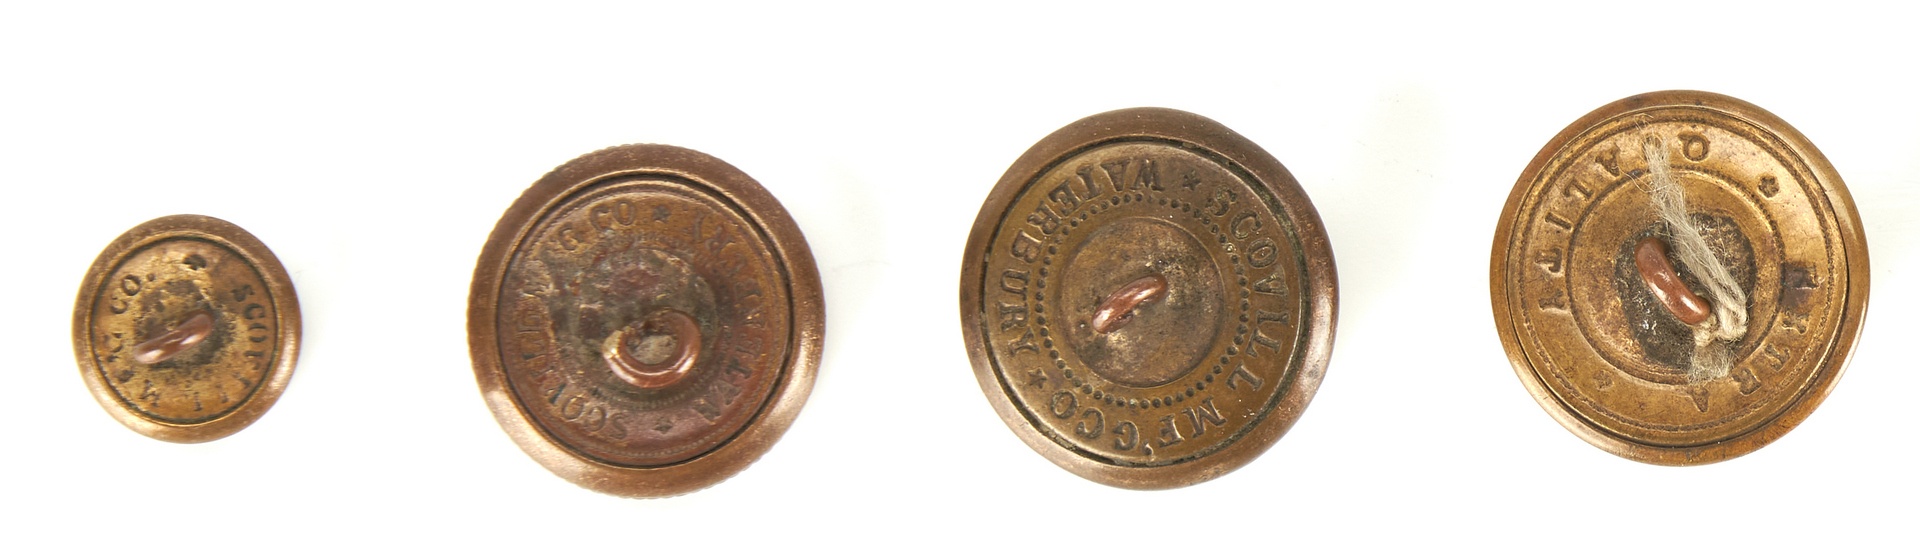 Lot 382: Group of 13 Civil War & Revolutionary War Items, incl. Buttons